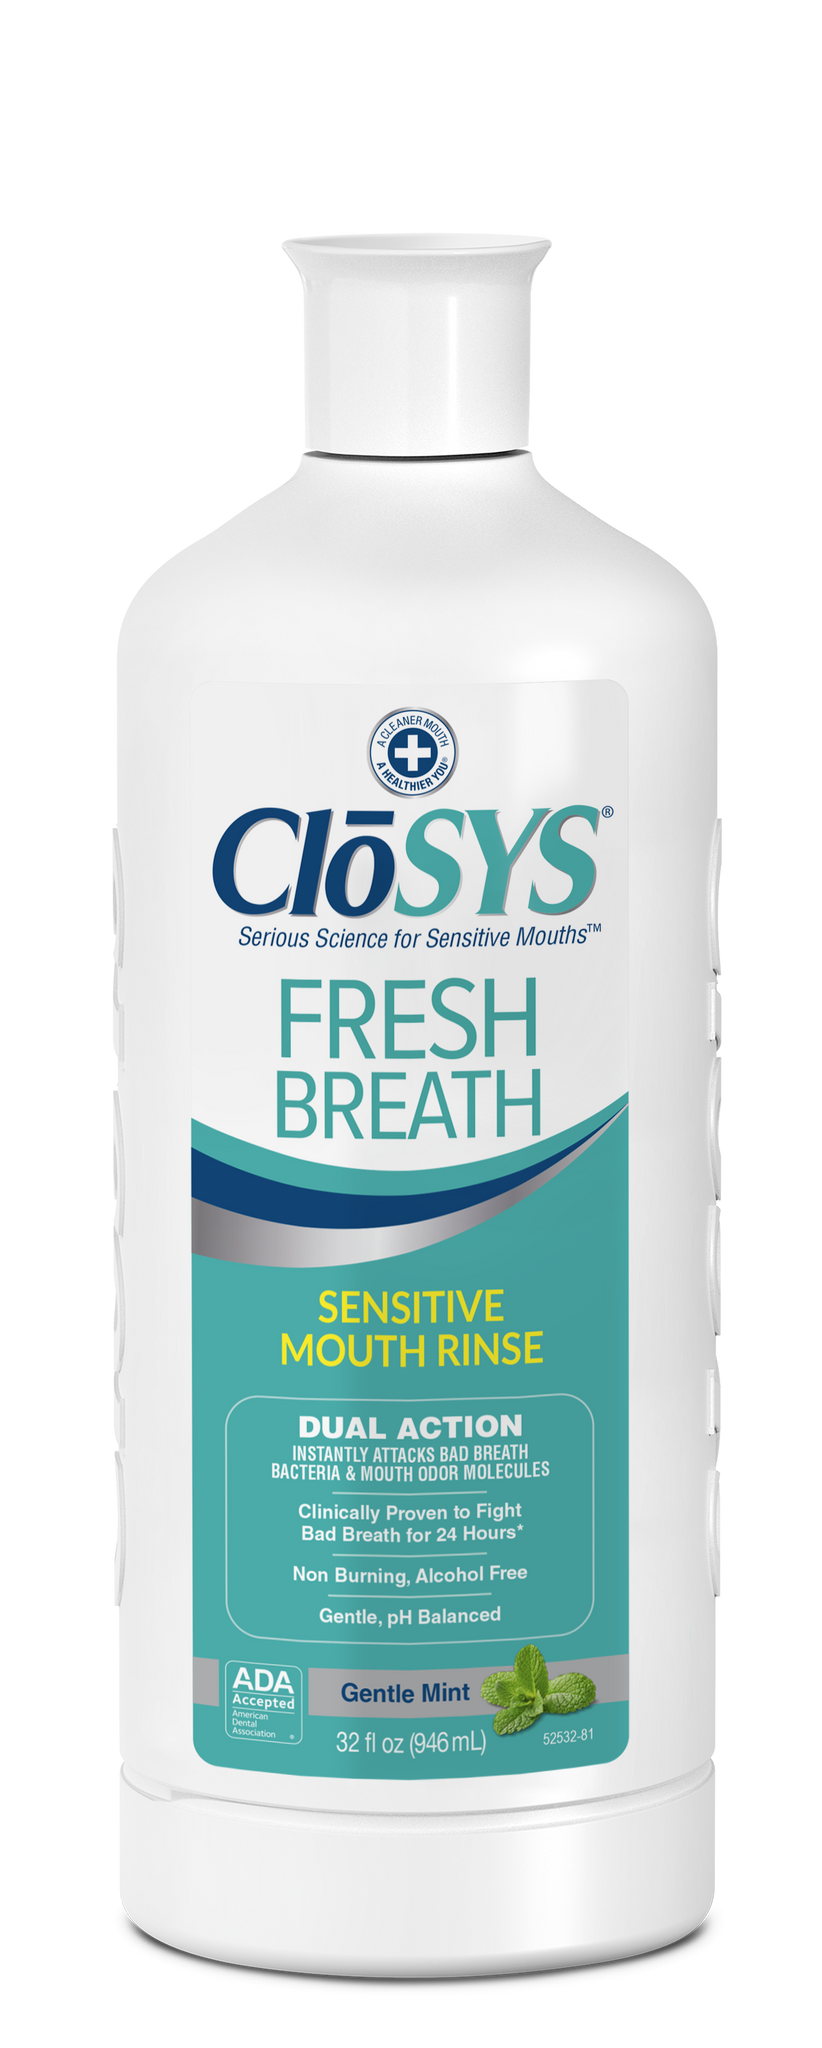 2 X The Breath Co Fresh Breath Oral Rinse Mild Mint 500ml